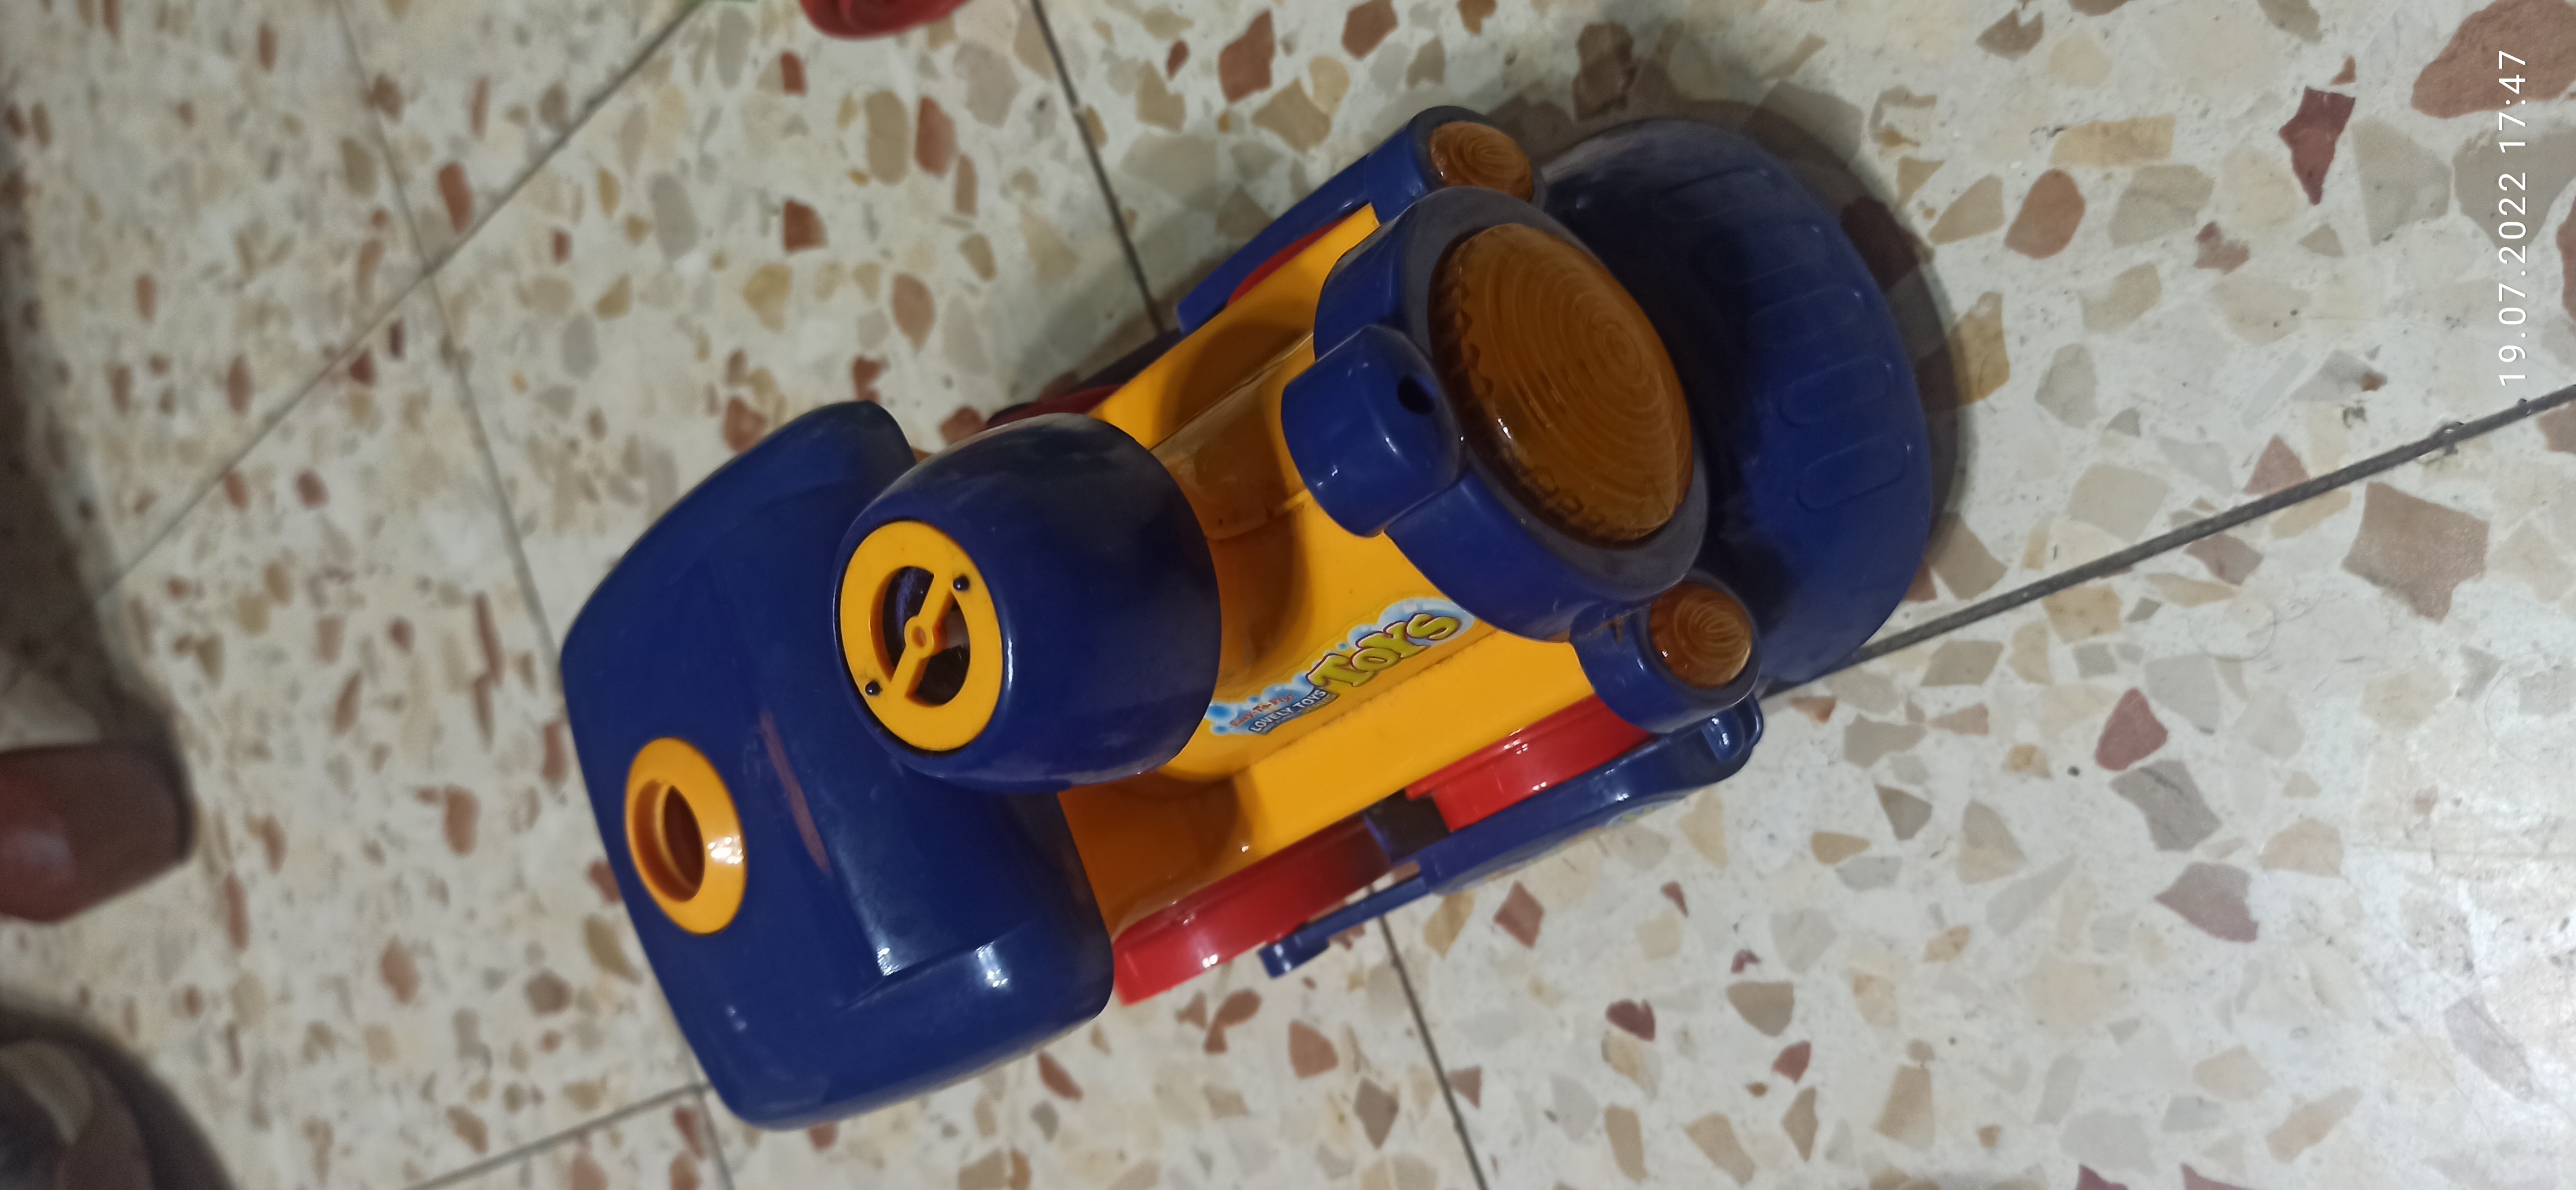 תמונה 4 ,4 מכוניות  1 מטוס גמבו למכירה ביבנה צעצועי ילדים  מכוניות